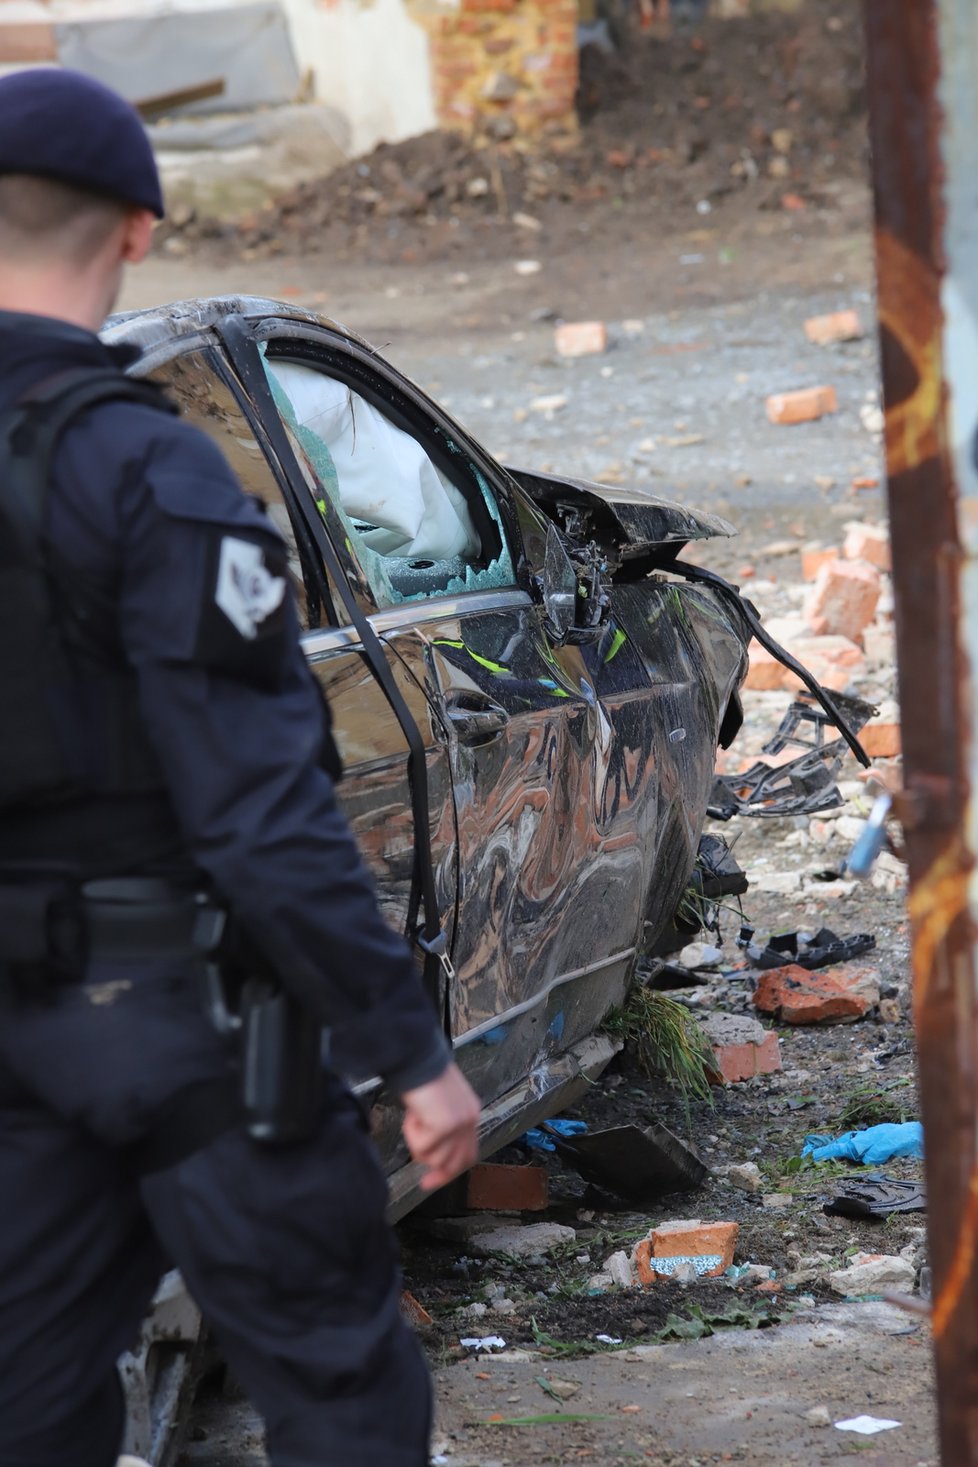 V Libni se stala vážná dopravní nehoda, auto prorazilo zeď a skončilo na střeše. Dva muži byli těžce zraněni